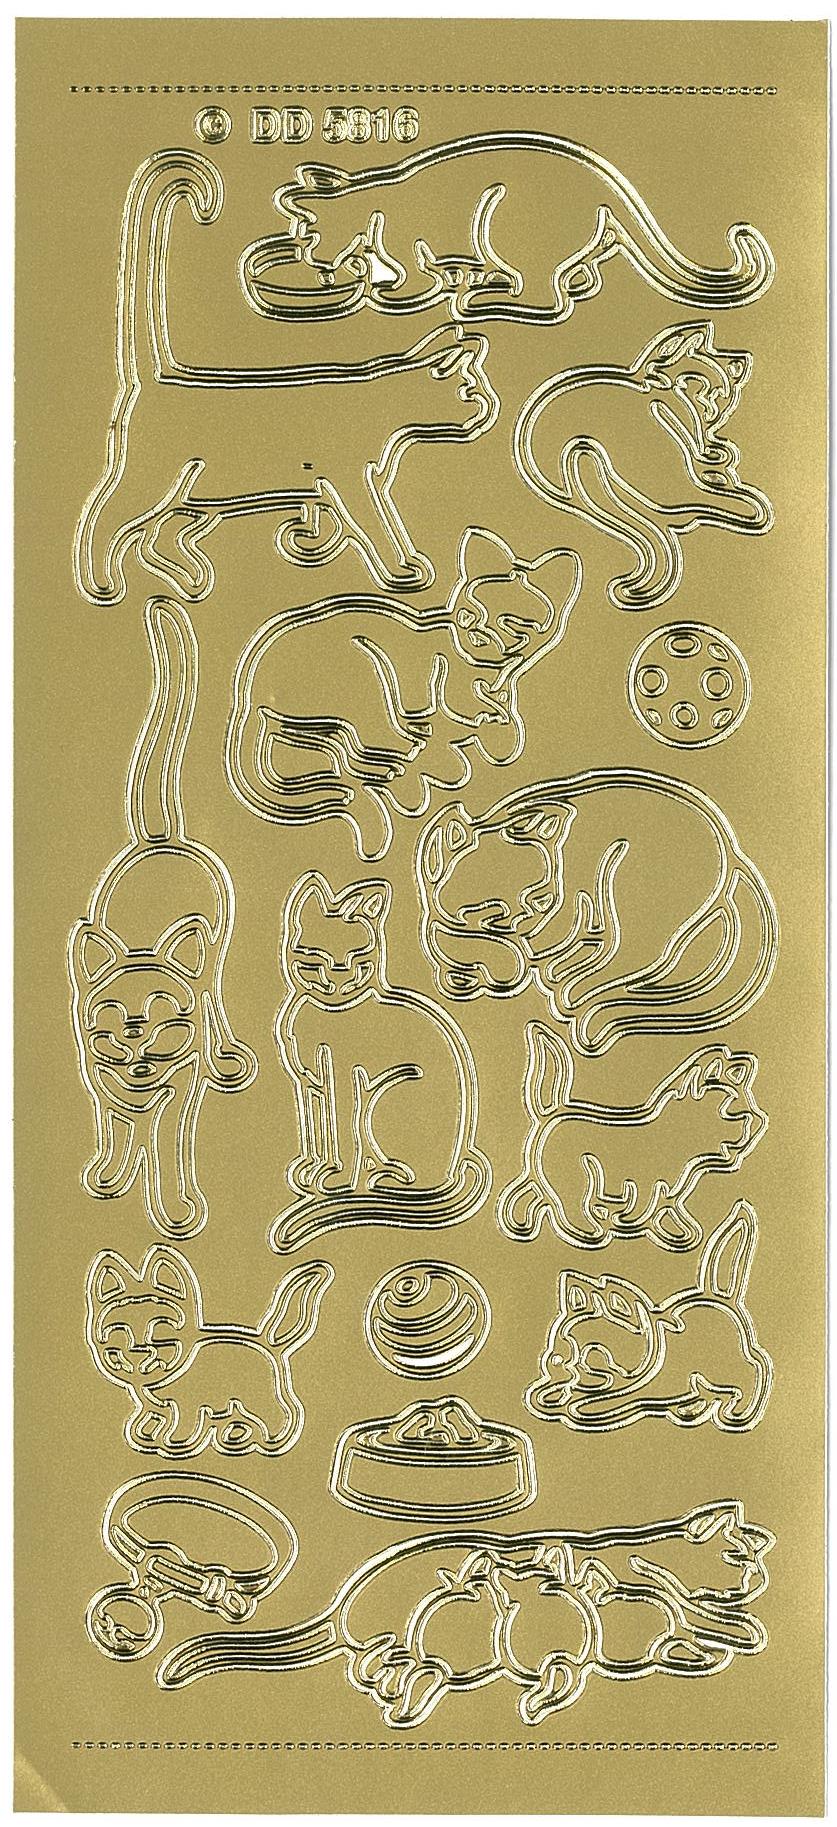 Stickers katte DD5816 guld